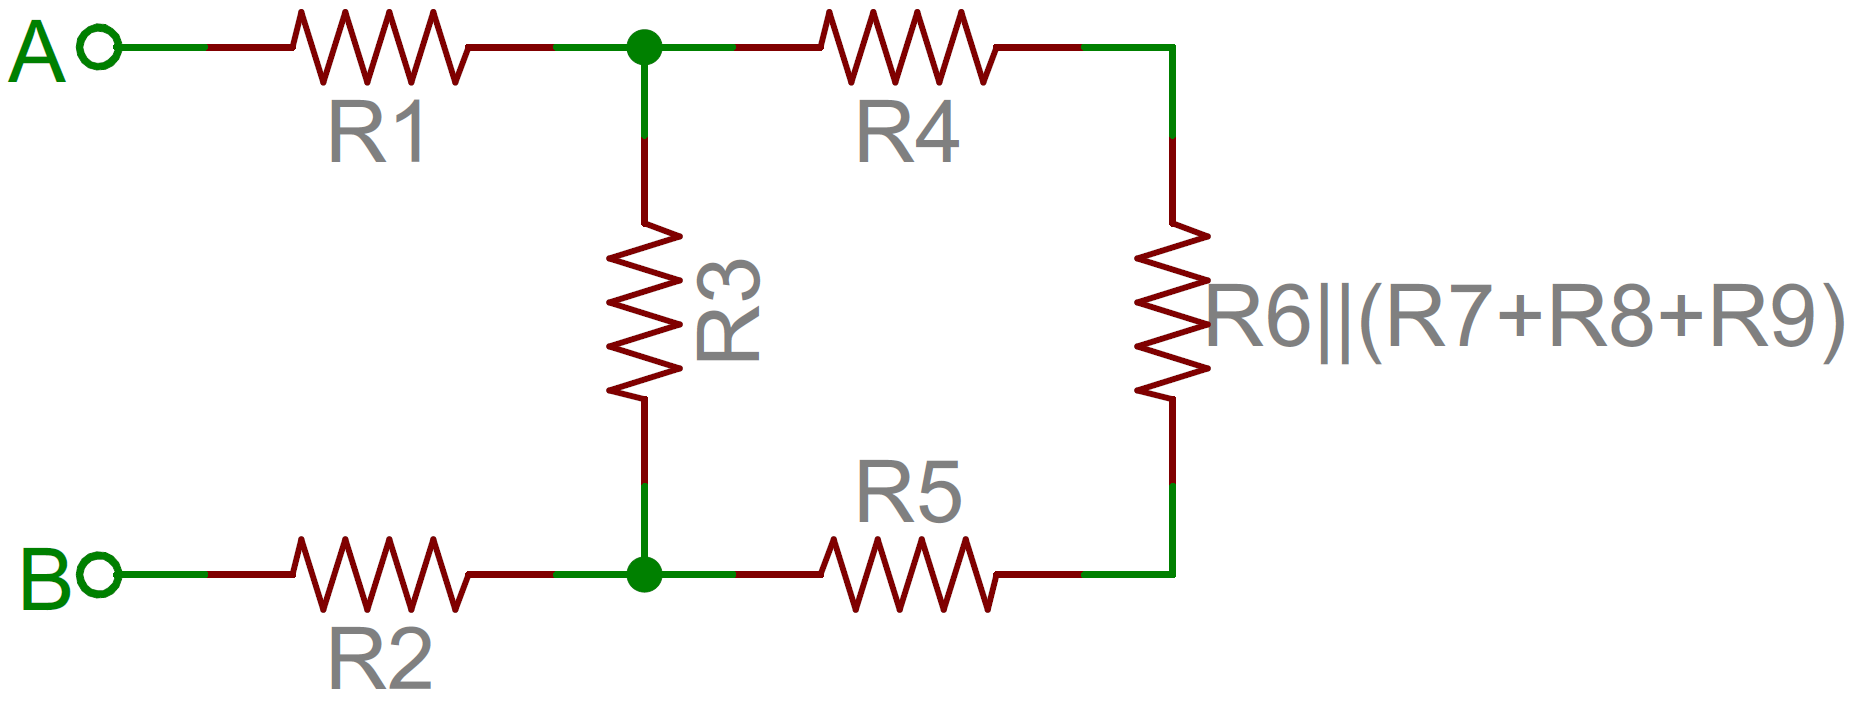 Jaringan resistor yang disederhanakan